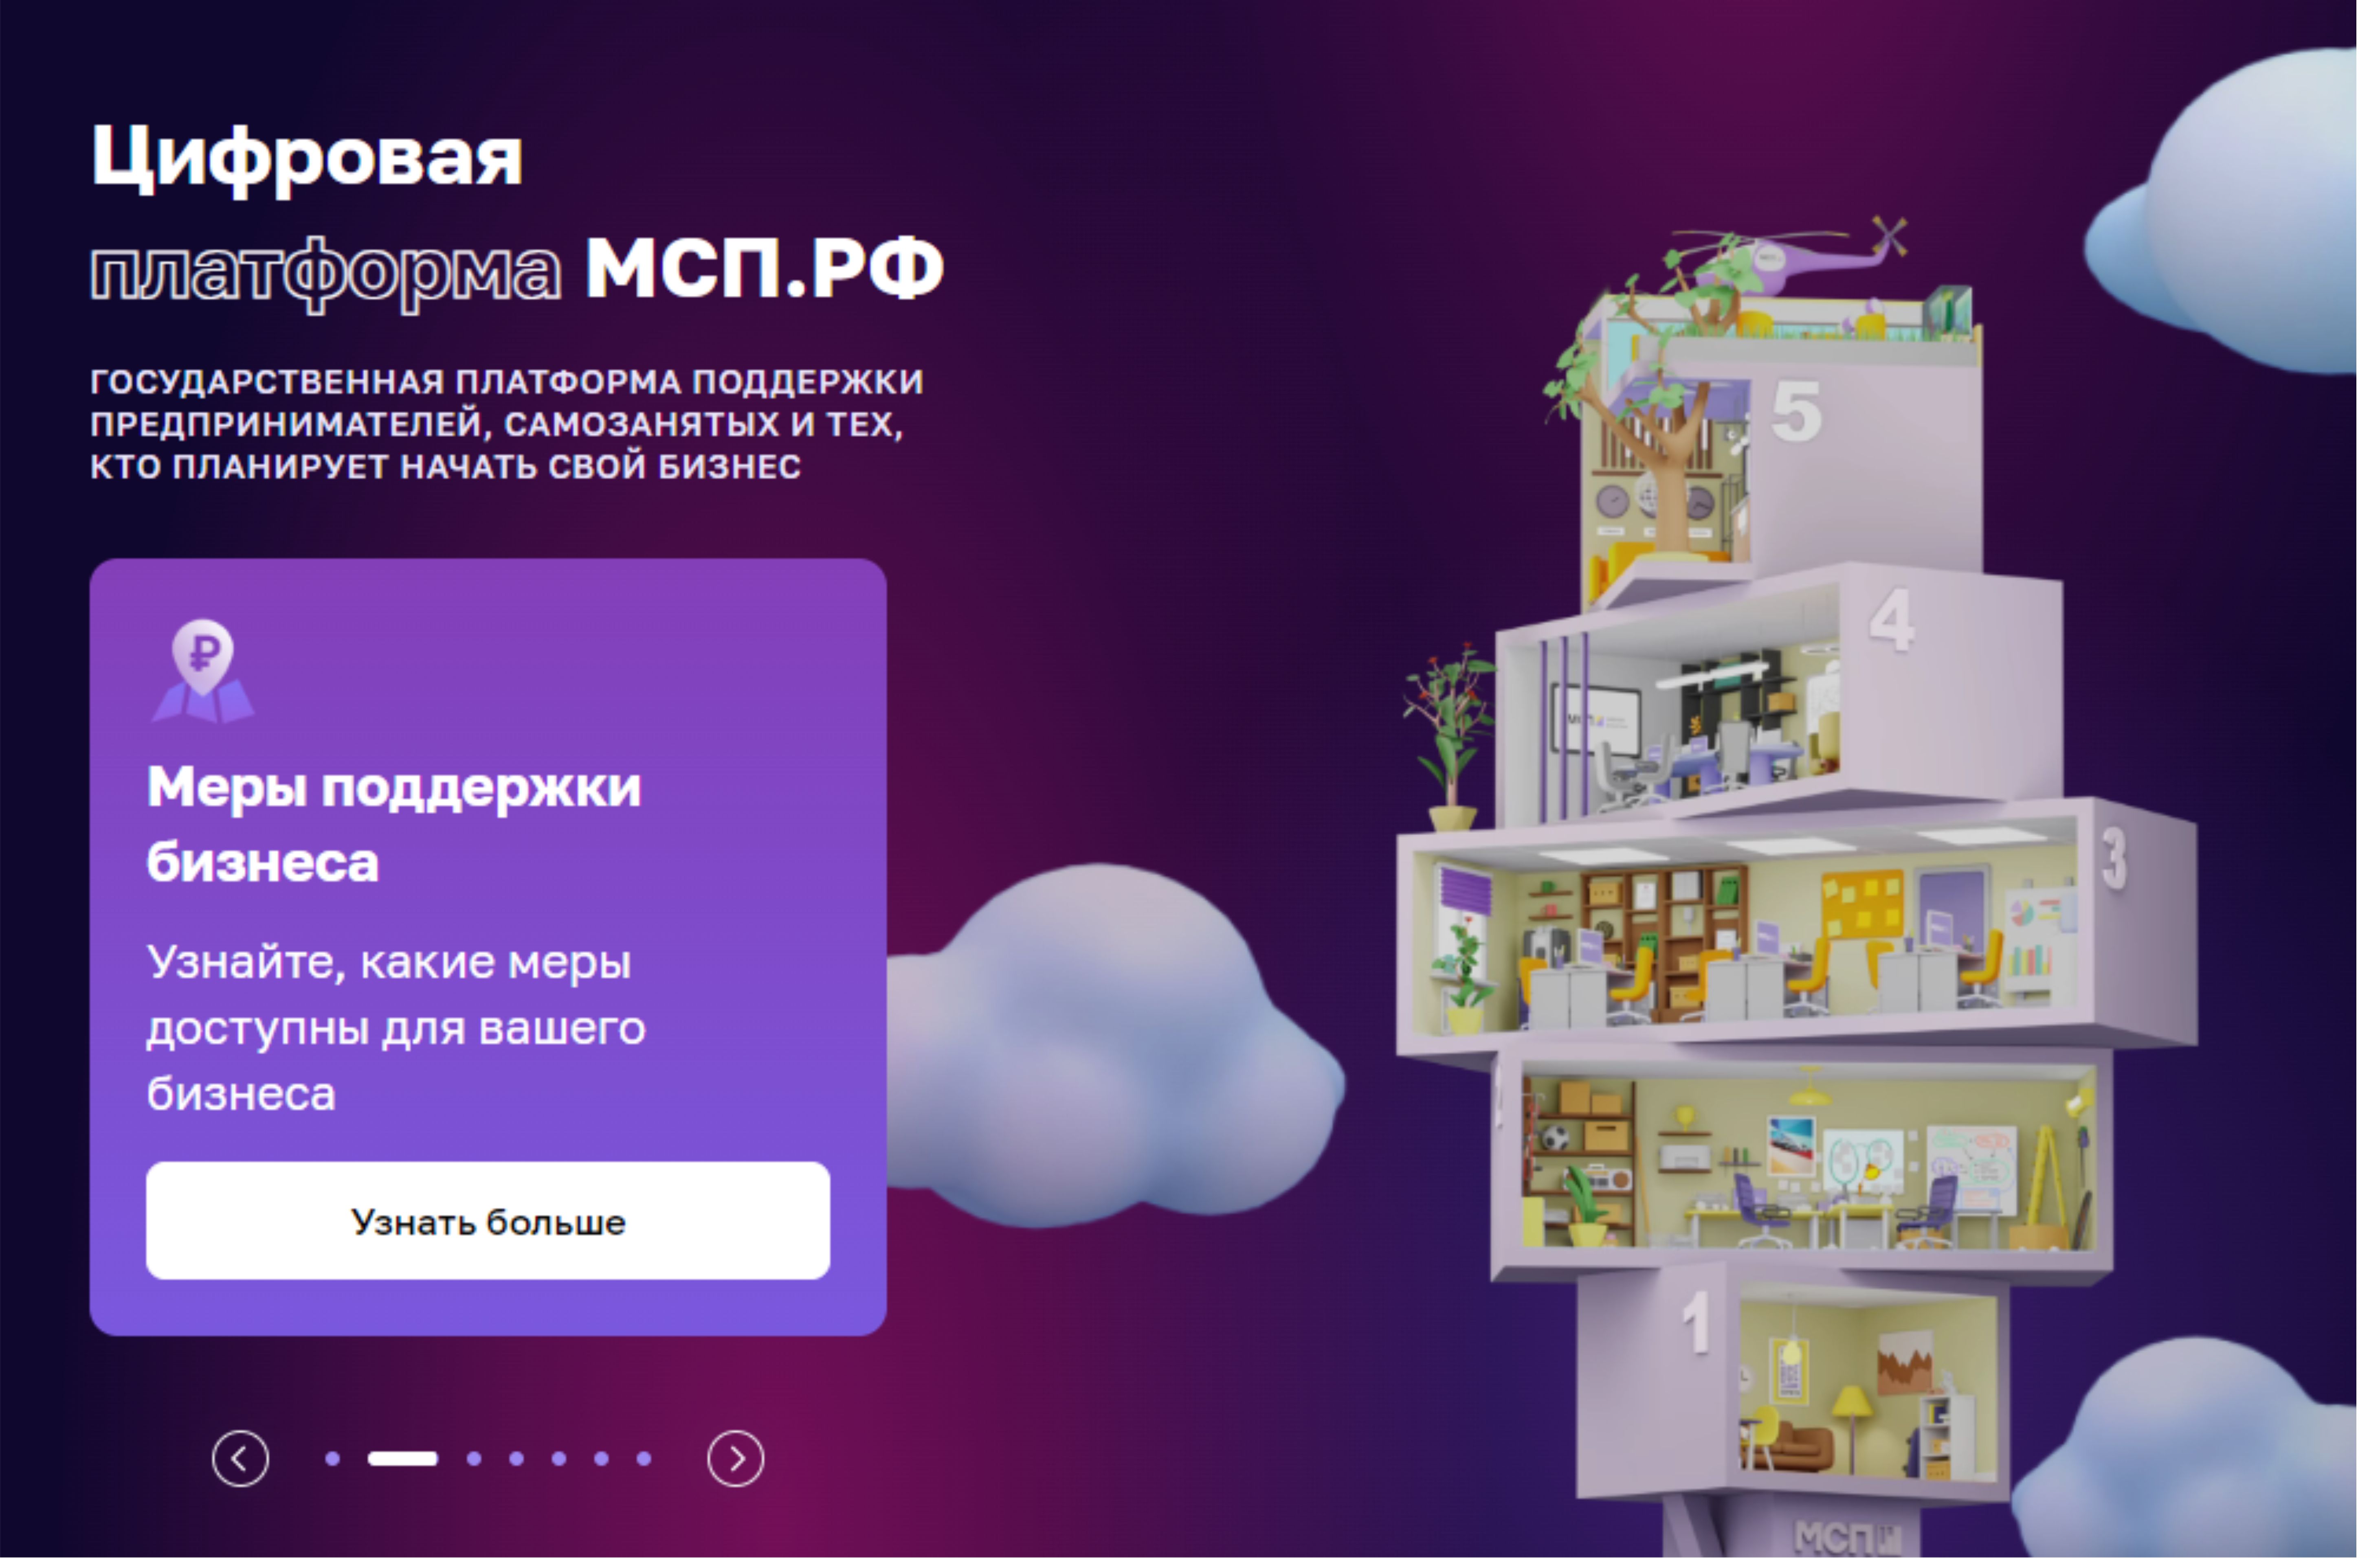 В России появилась первая единая онлайн-база льготного государственного имущества для МСП